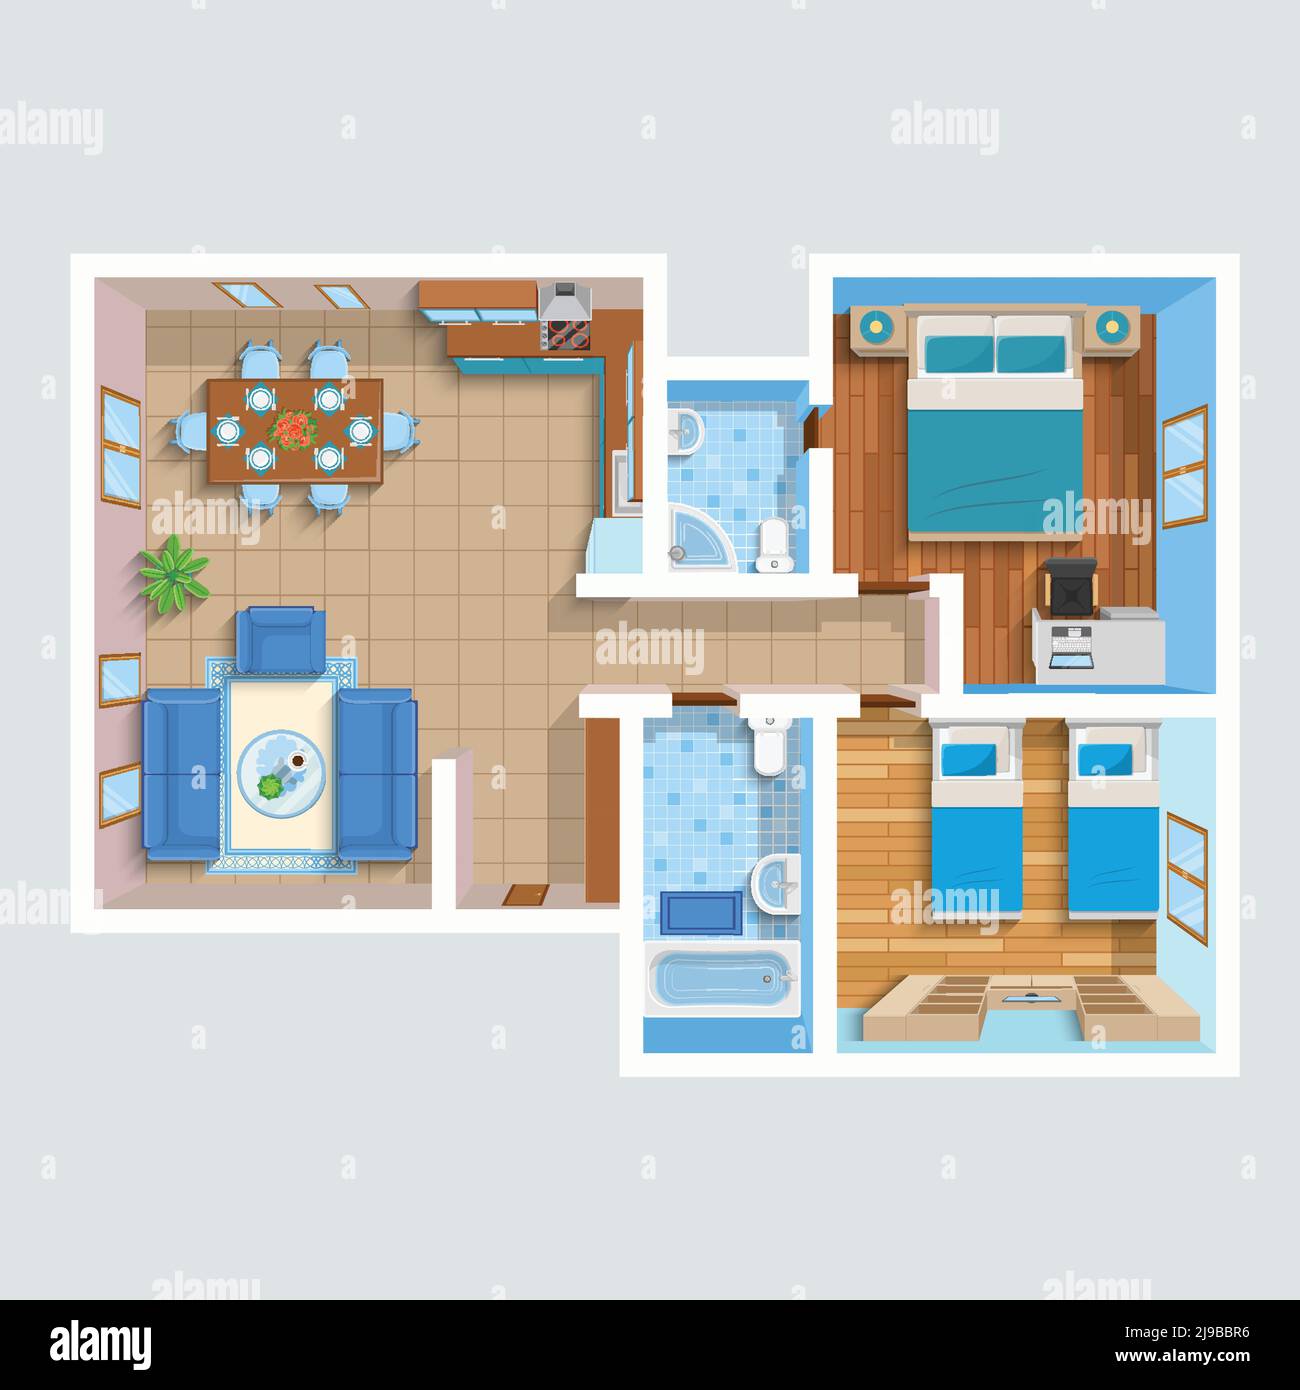 Wohnung mit Blick von oben und Wohnbereich, zwei Schlafzimmer, Badezimmer Und Möbel Vektor Illustration Stock Vektor